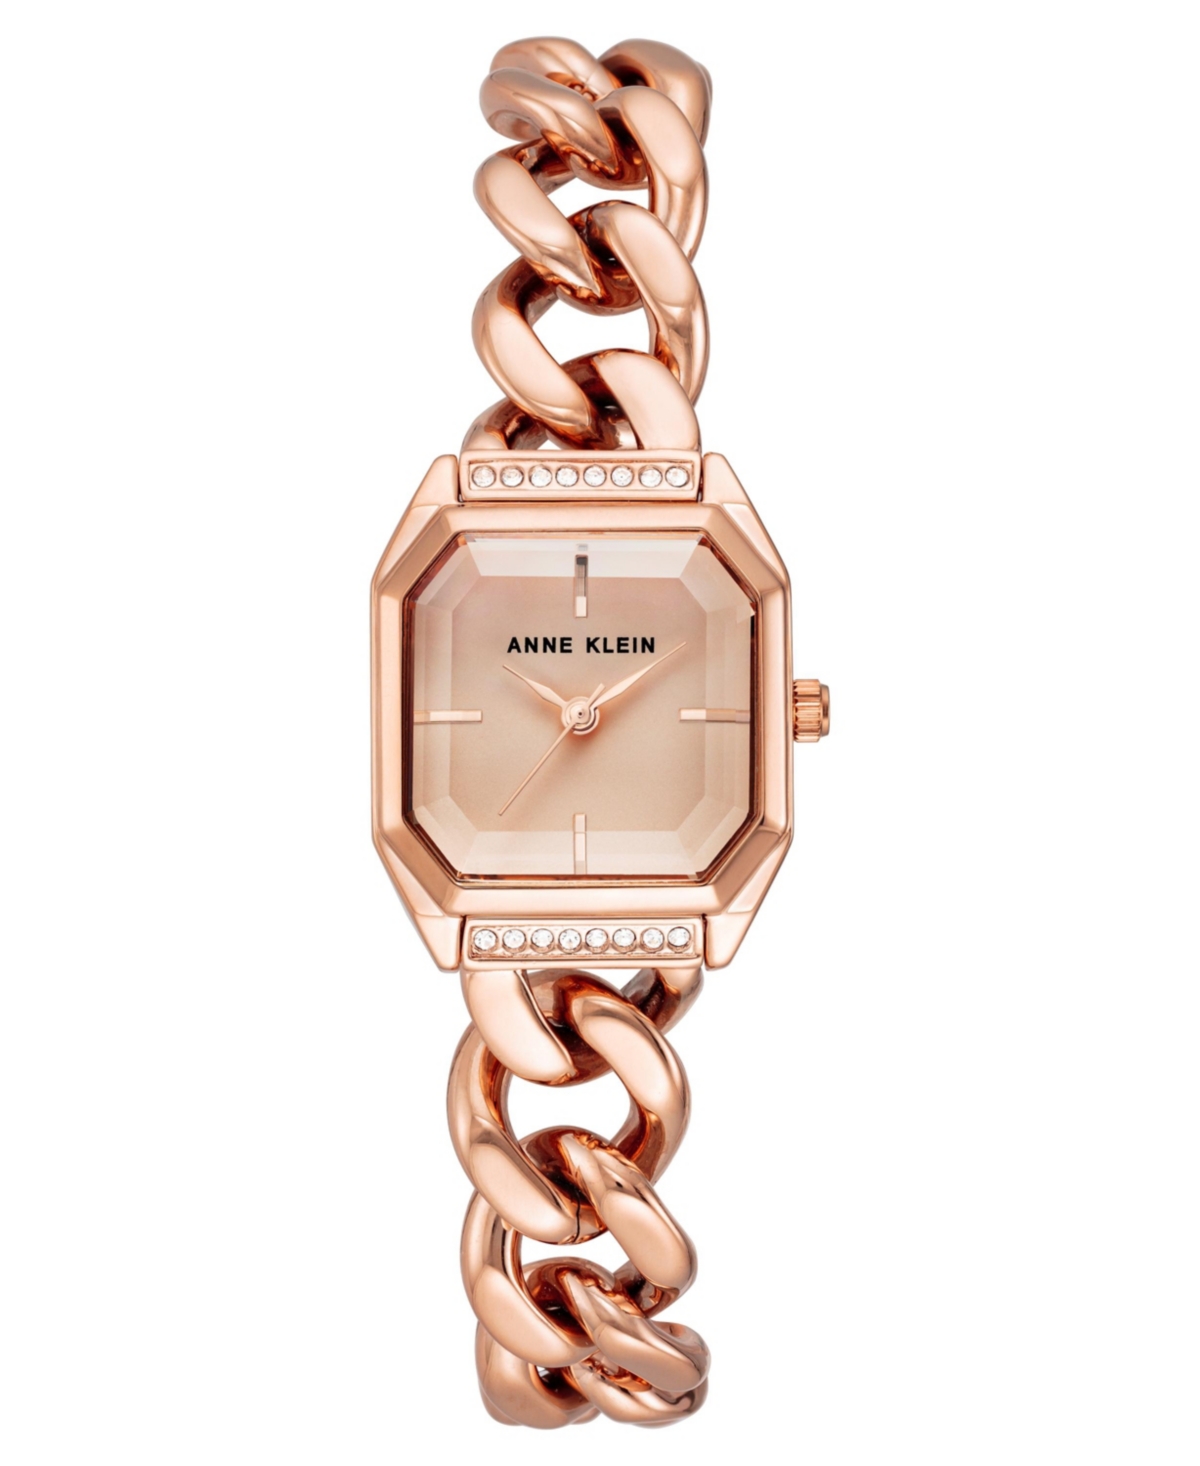 Anne Klein Women's Three-hand Quartz Rose Gold-tone Alloy Chain Bracelet Watch, 23mm